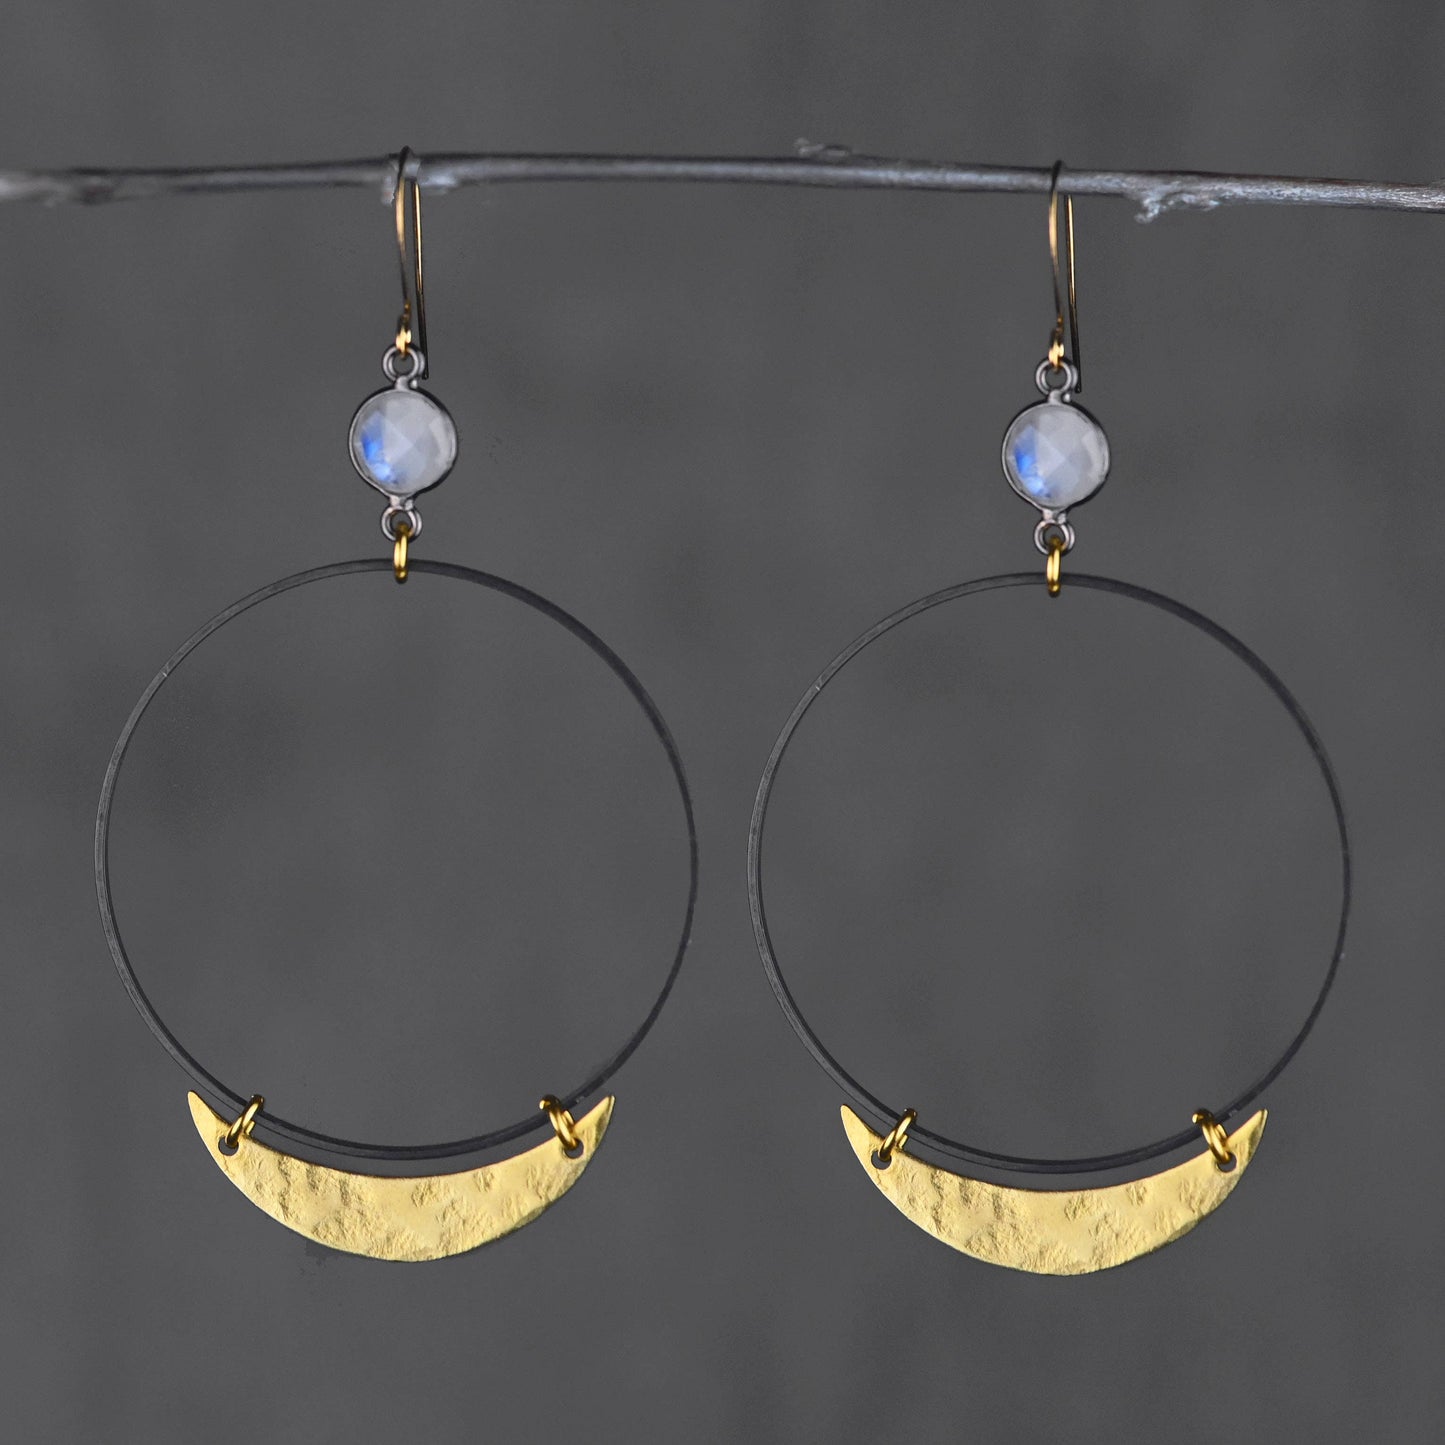 50mm Black Hoop W/ Gem & Hammered Crescent Moon Earrings